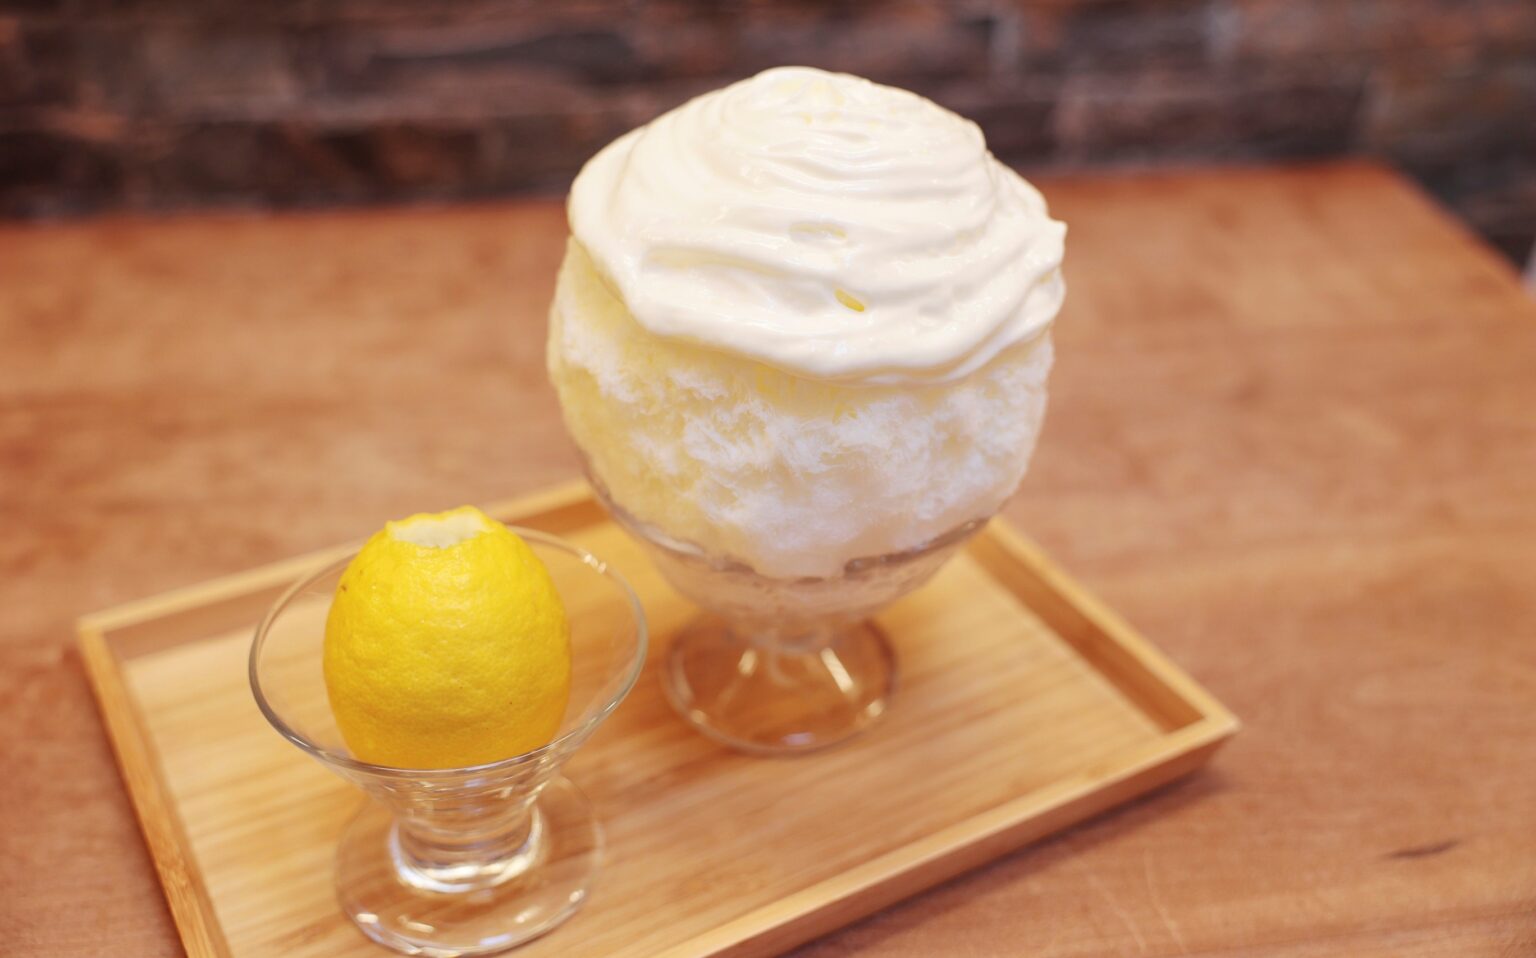 レモンみるくのかき氷（1個）1,430円

＜8月2日(水)→14日(月)＞